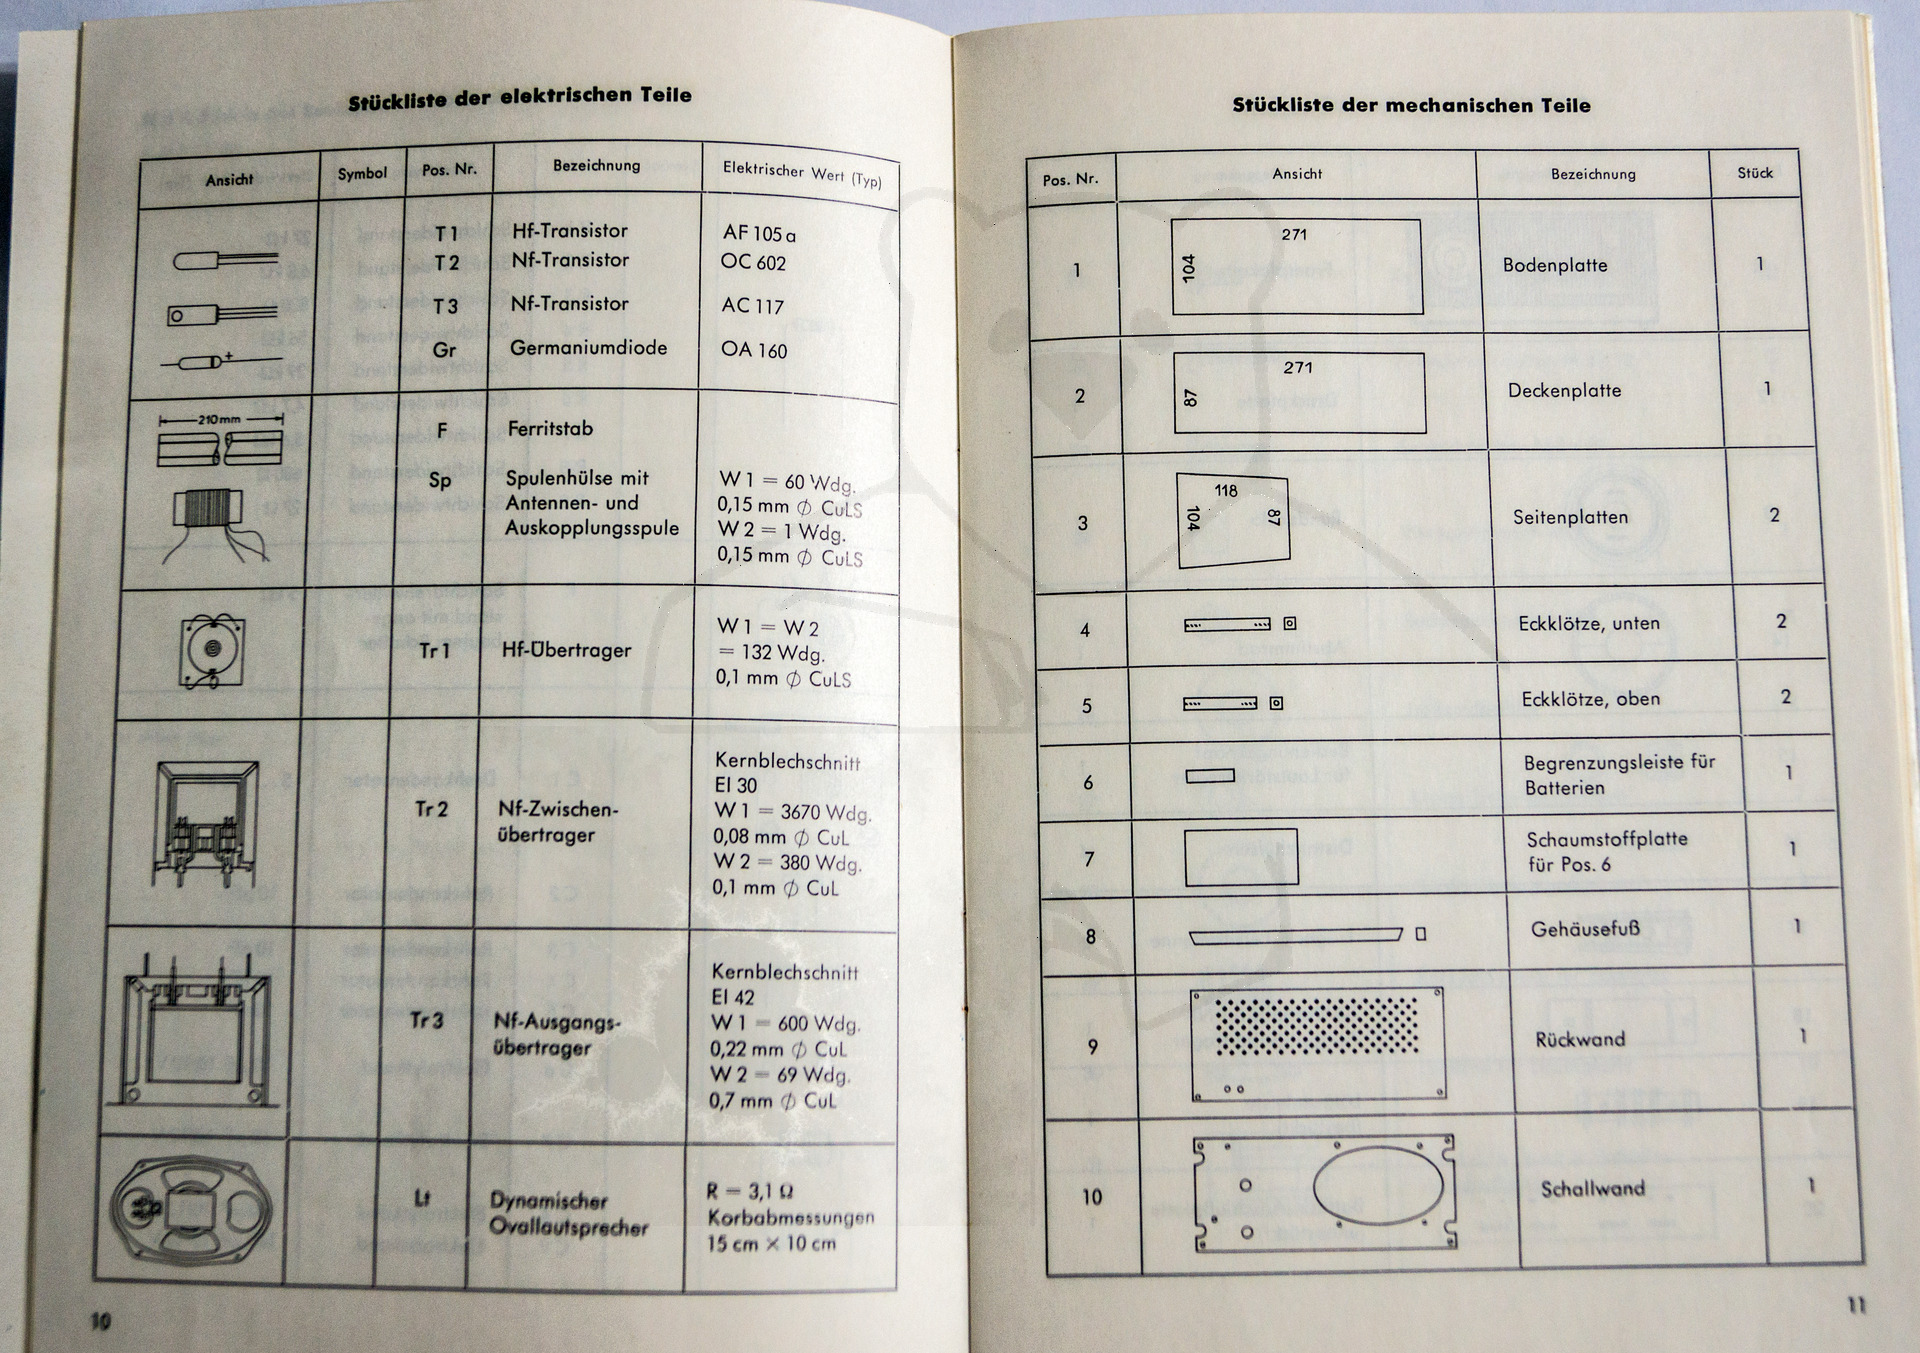 Kosmos Telefunken Kamerad - Handbuch, Beschreibung der einzelnen Komponenten